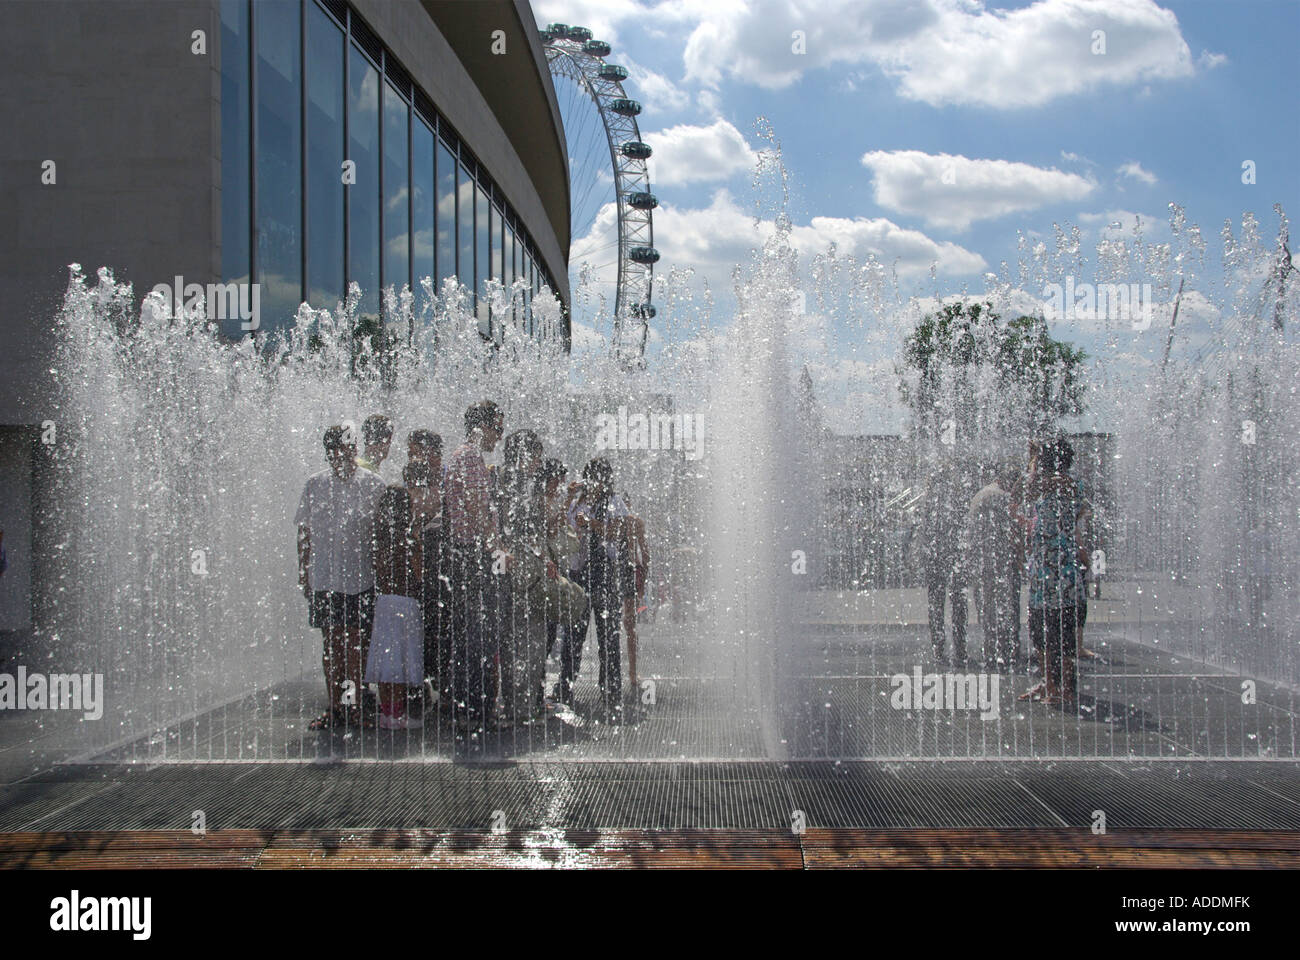 Londra Southbank che figurano camere caratteristica fontana per bambini in piedi & giocando a rimanere a secco o per raffreddare la South Bank Royal Festival Hall Regno Unito Foto Stock